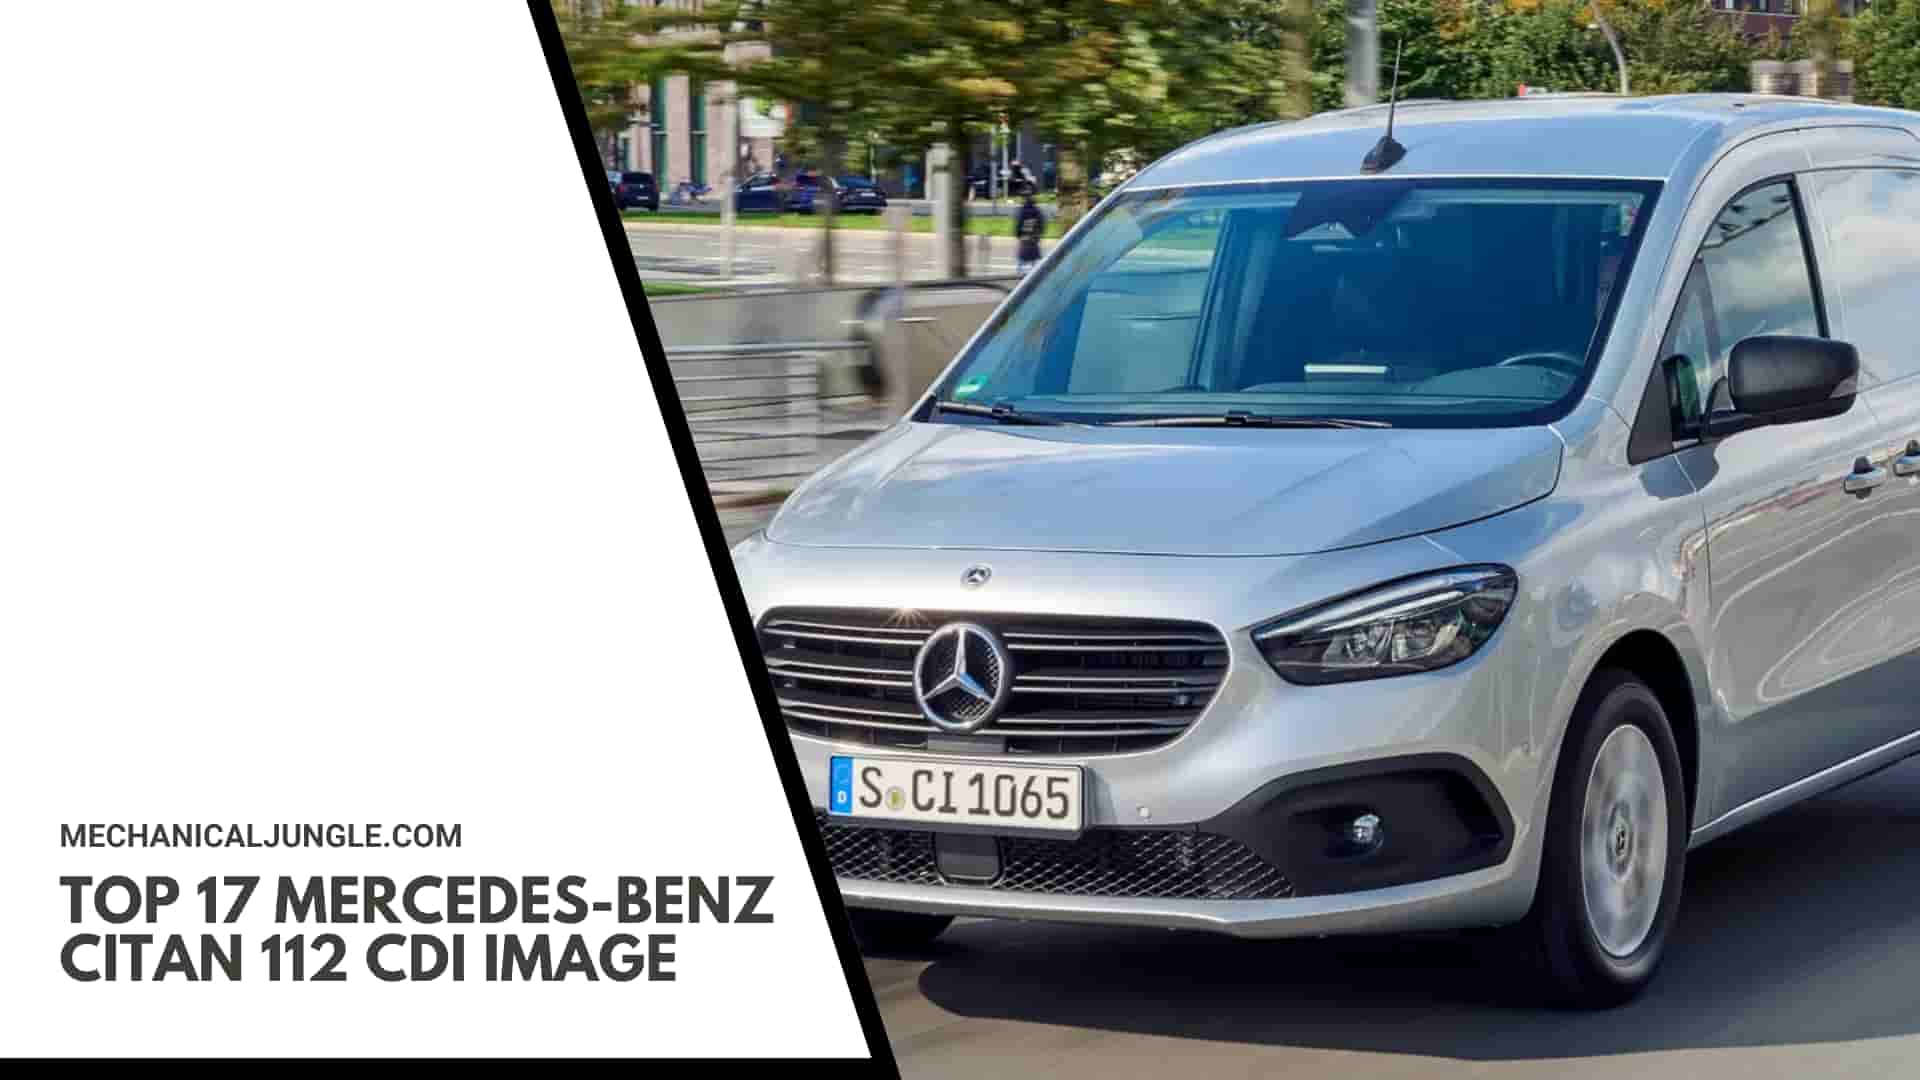 Top 17 Mercedes-Benz Citan 112 CDI Image